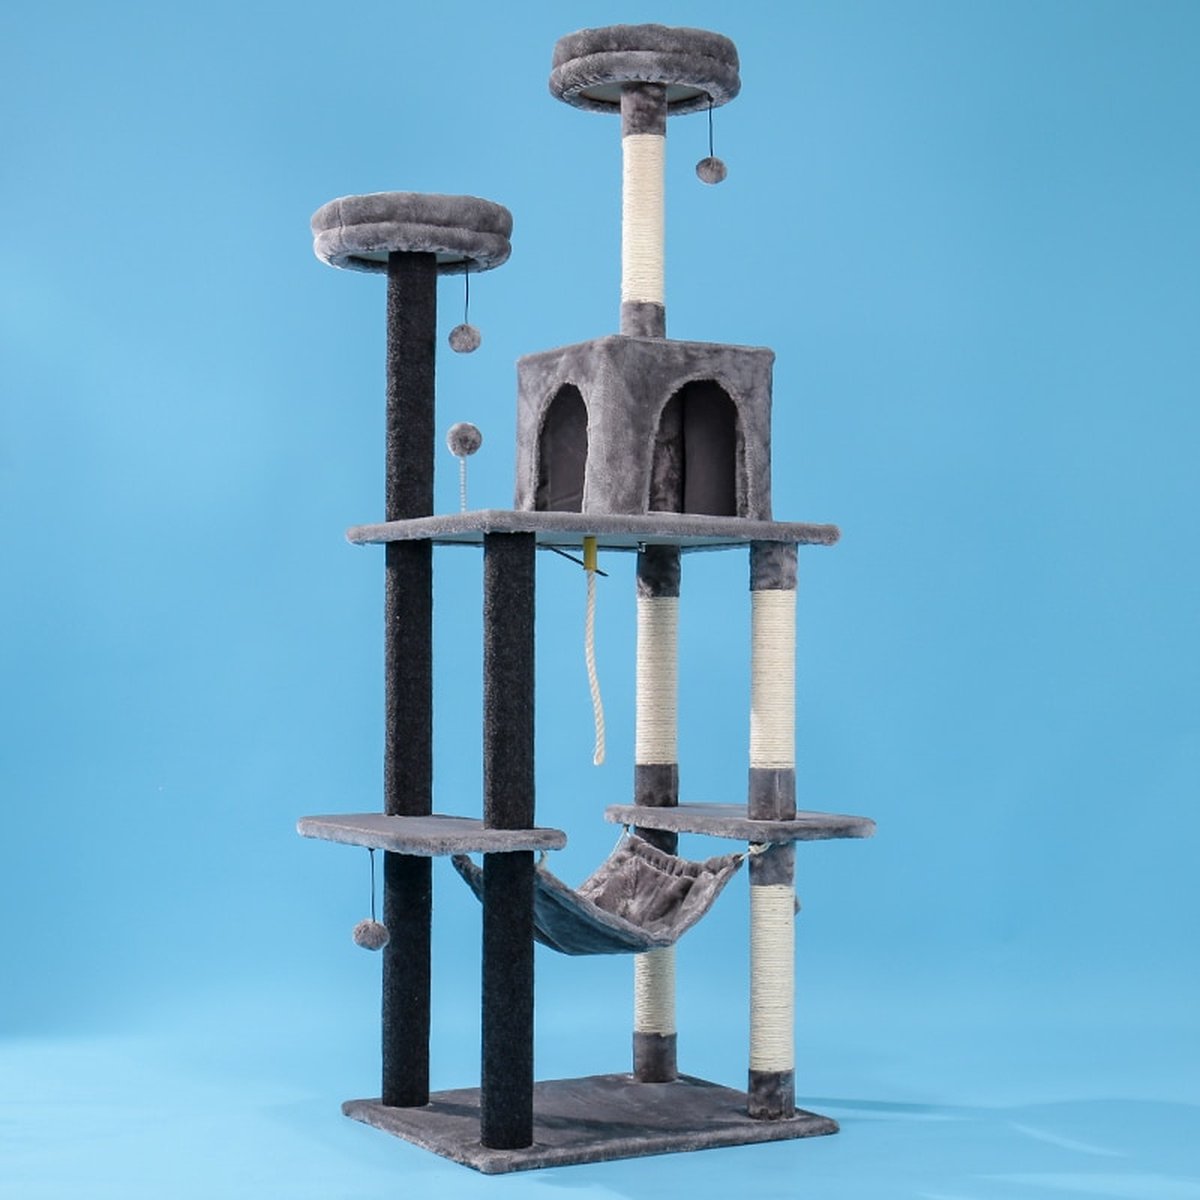 Luxe Katten krabpaal - Krabpaal voor katten - Grijs - 60x30x145 cm - Katten hangmat - Grijs